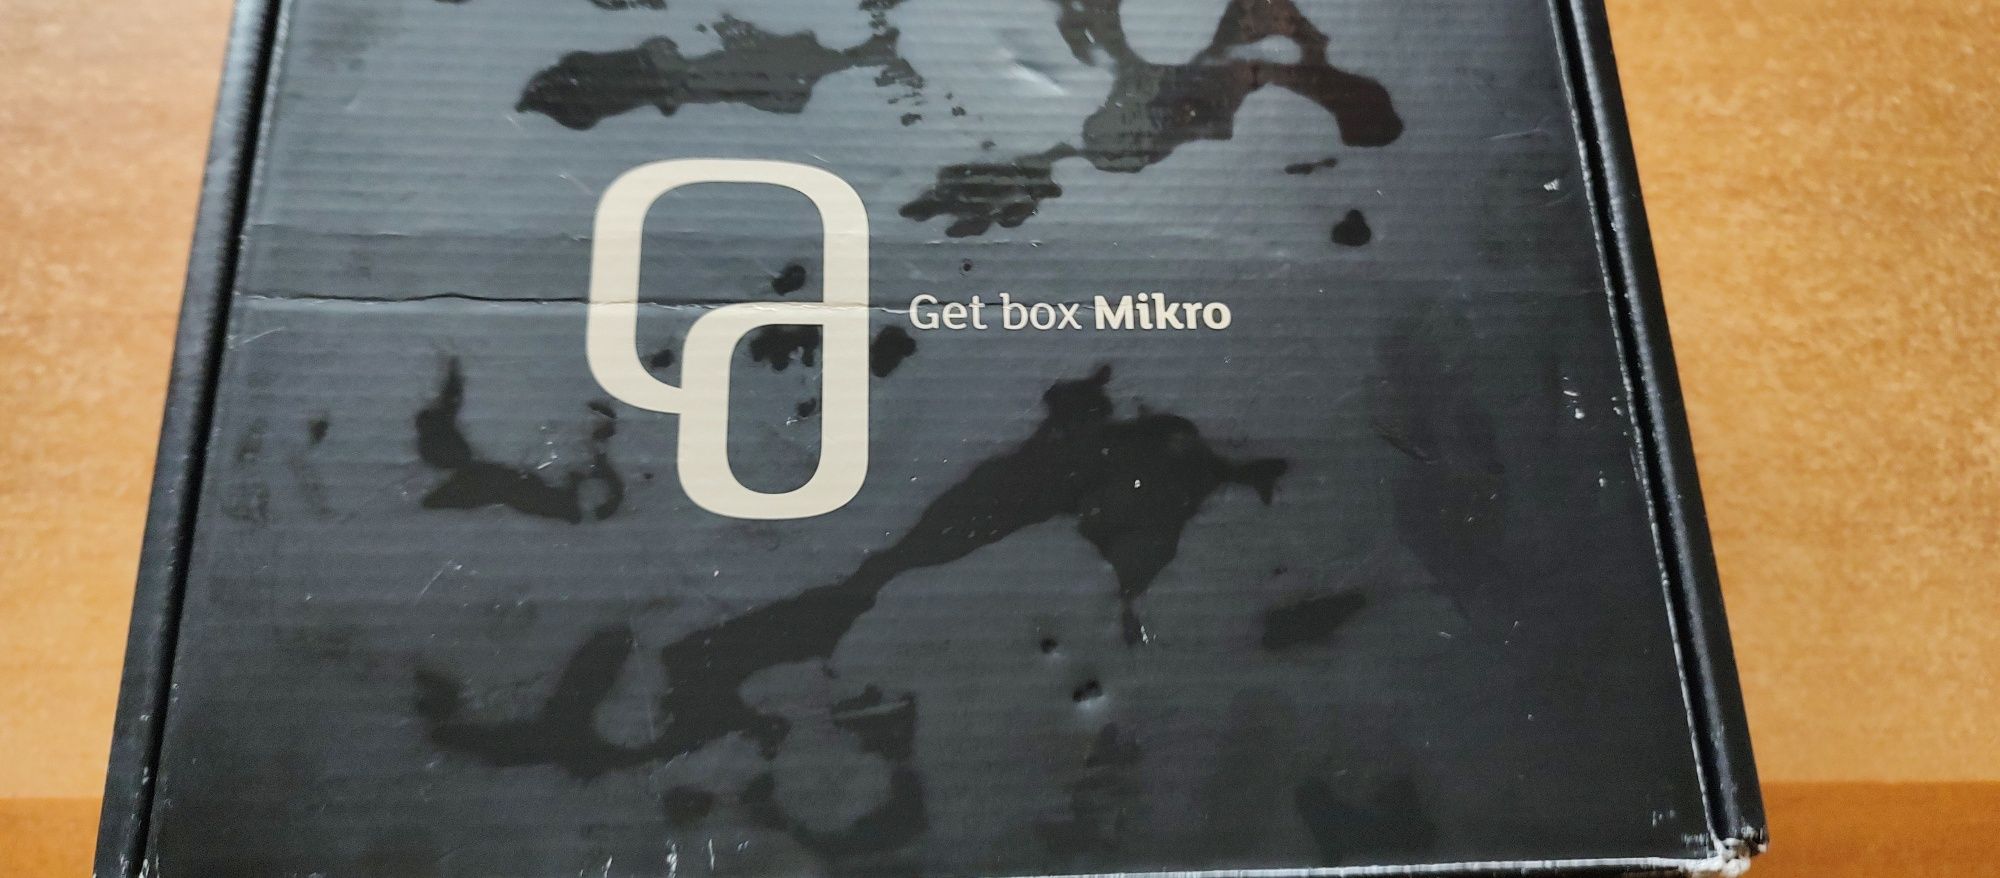 Get box micro nou